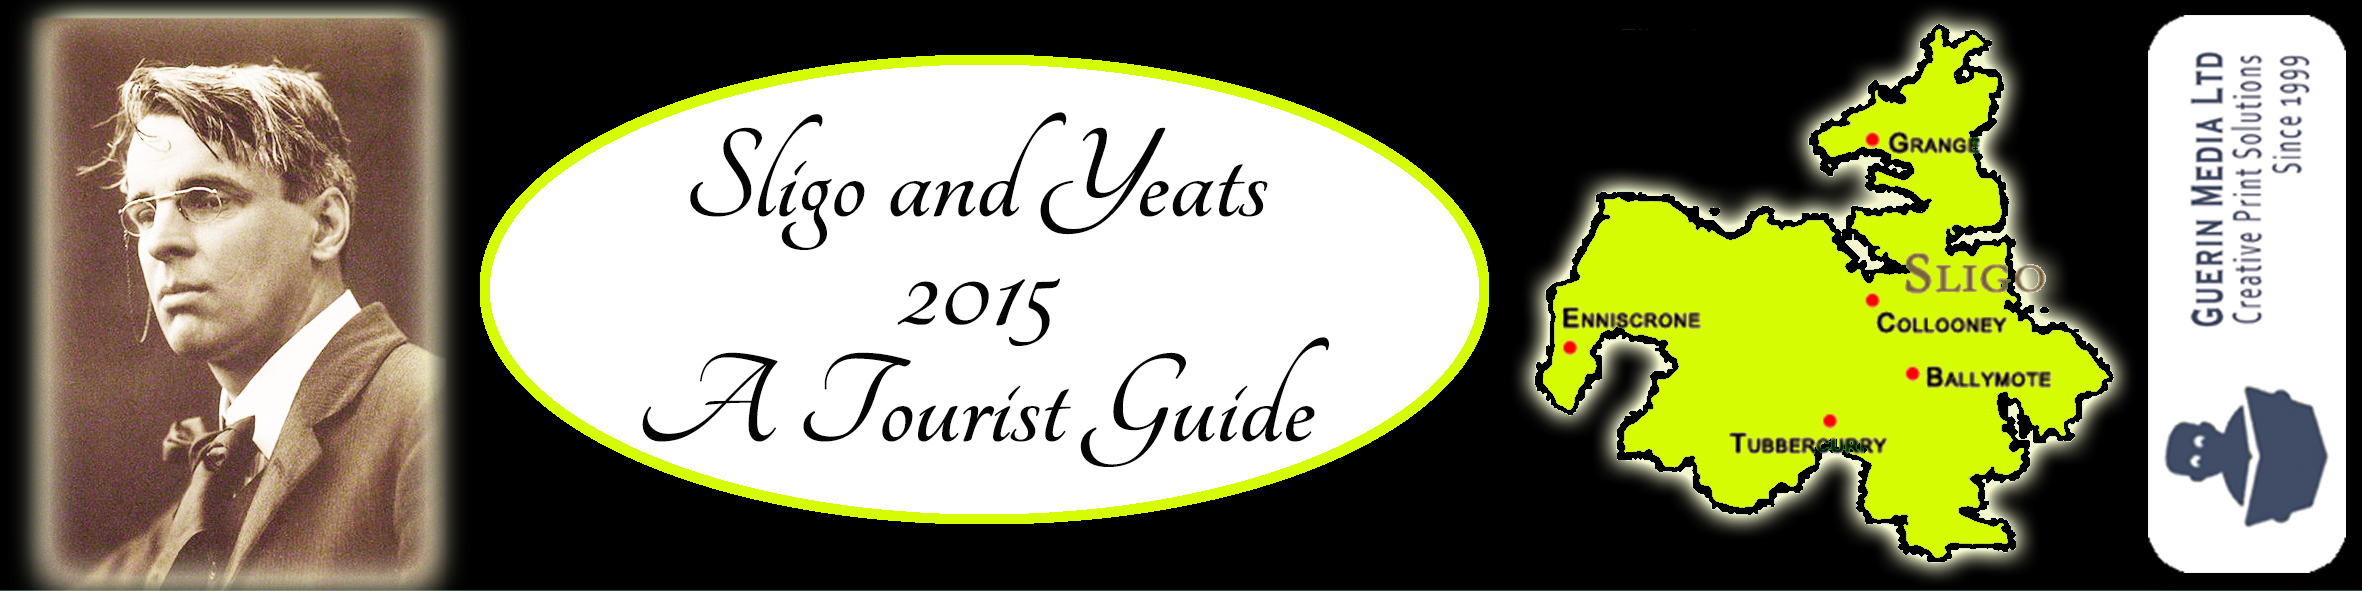 Sligo and Yeats 2015. A Tourist Guide banner